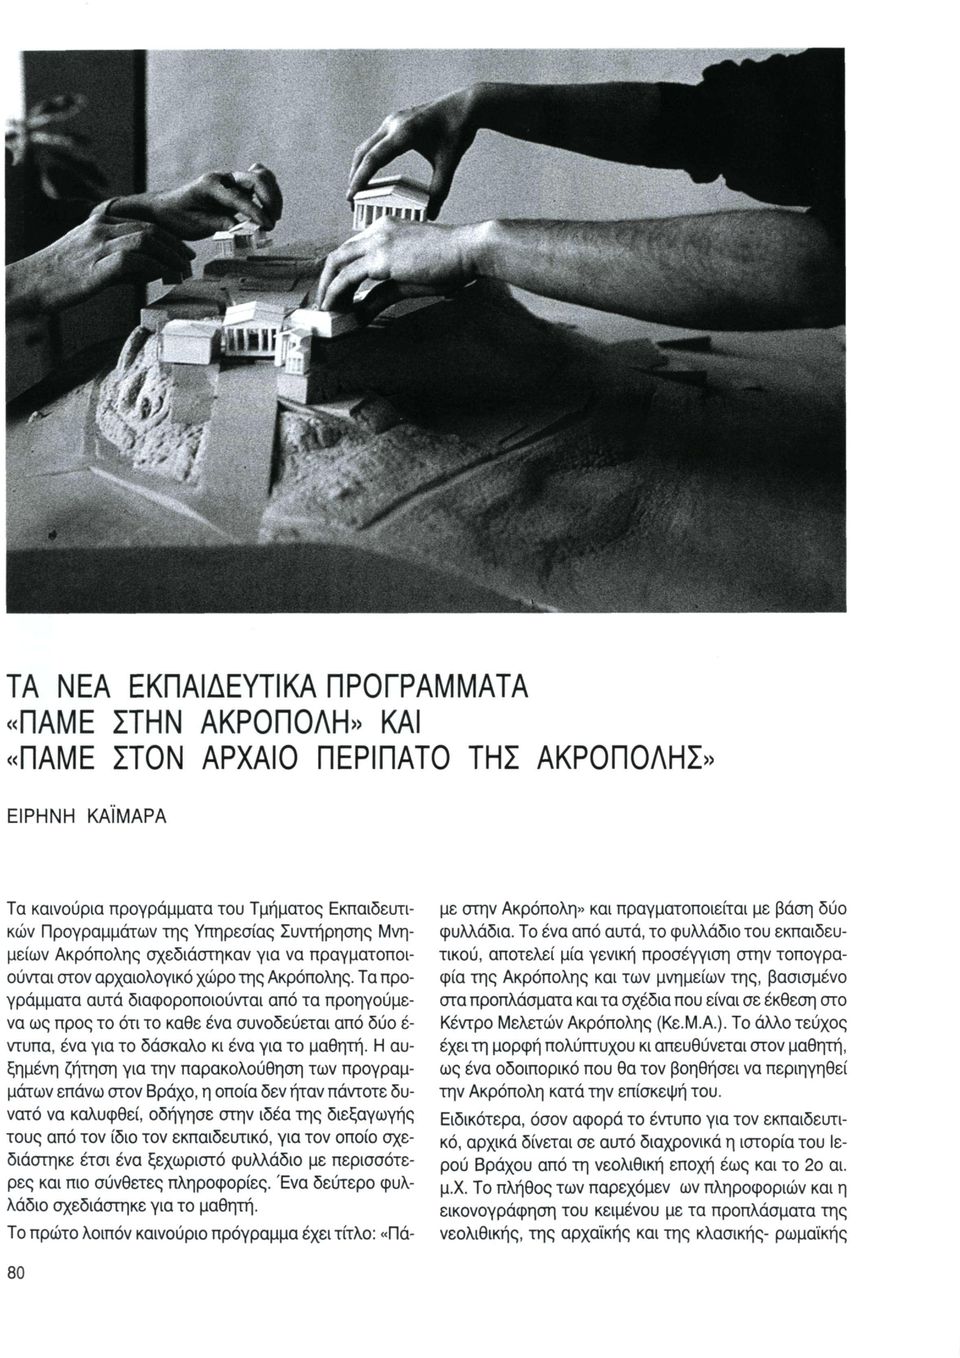 Υπηρεσίας Συντήρησης Μνημείων Ακρόπολης σχεδιάστηκαν για να πραγματοποιούνται στον αρχαιολογικό χώρο της Ακρόπολης.